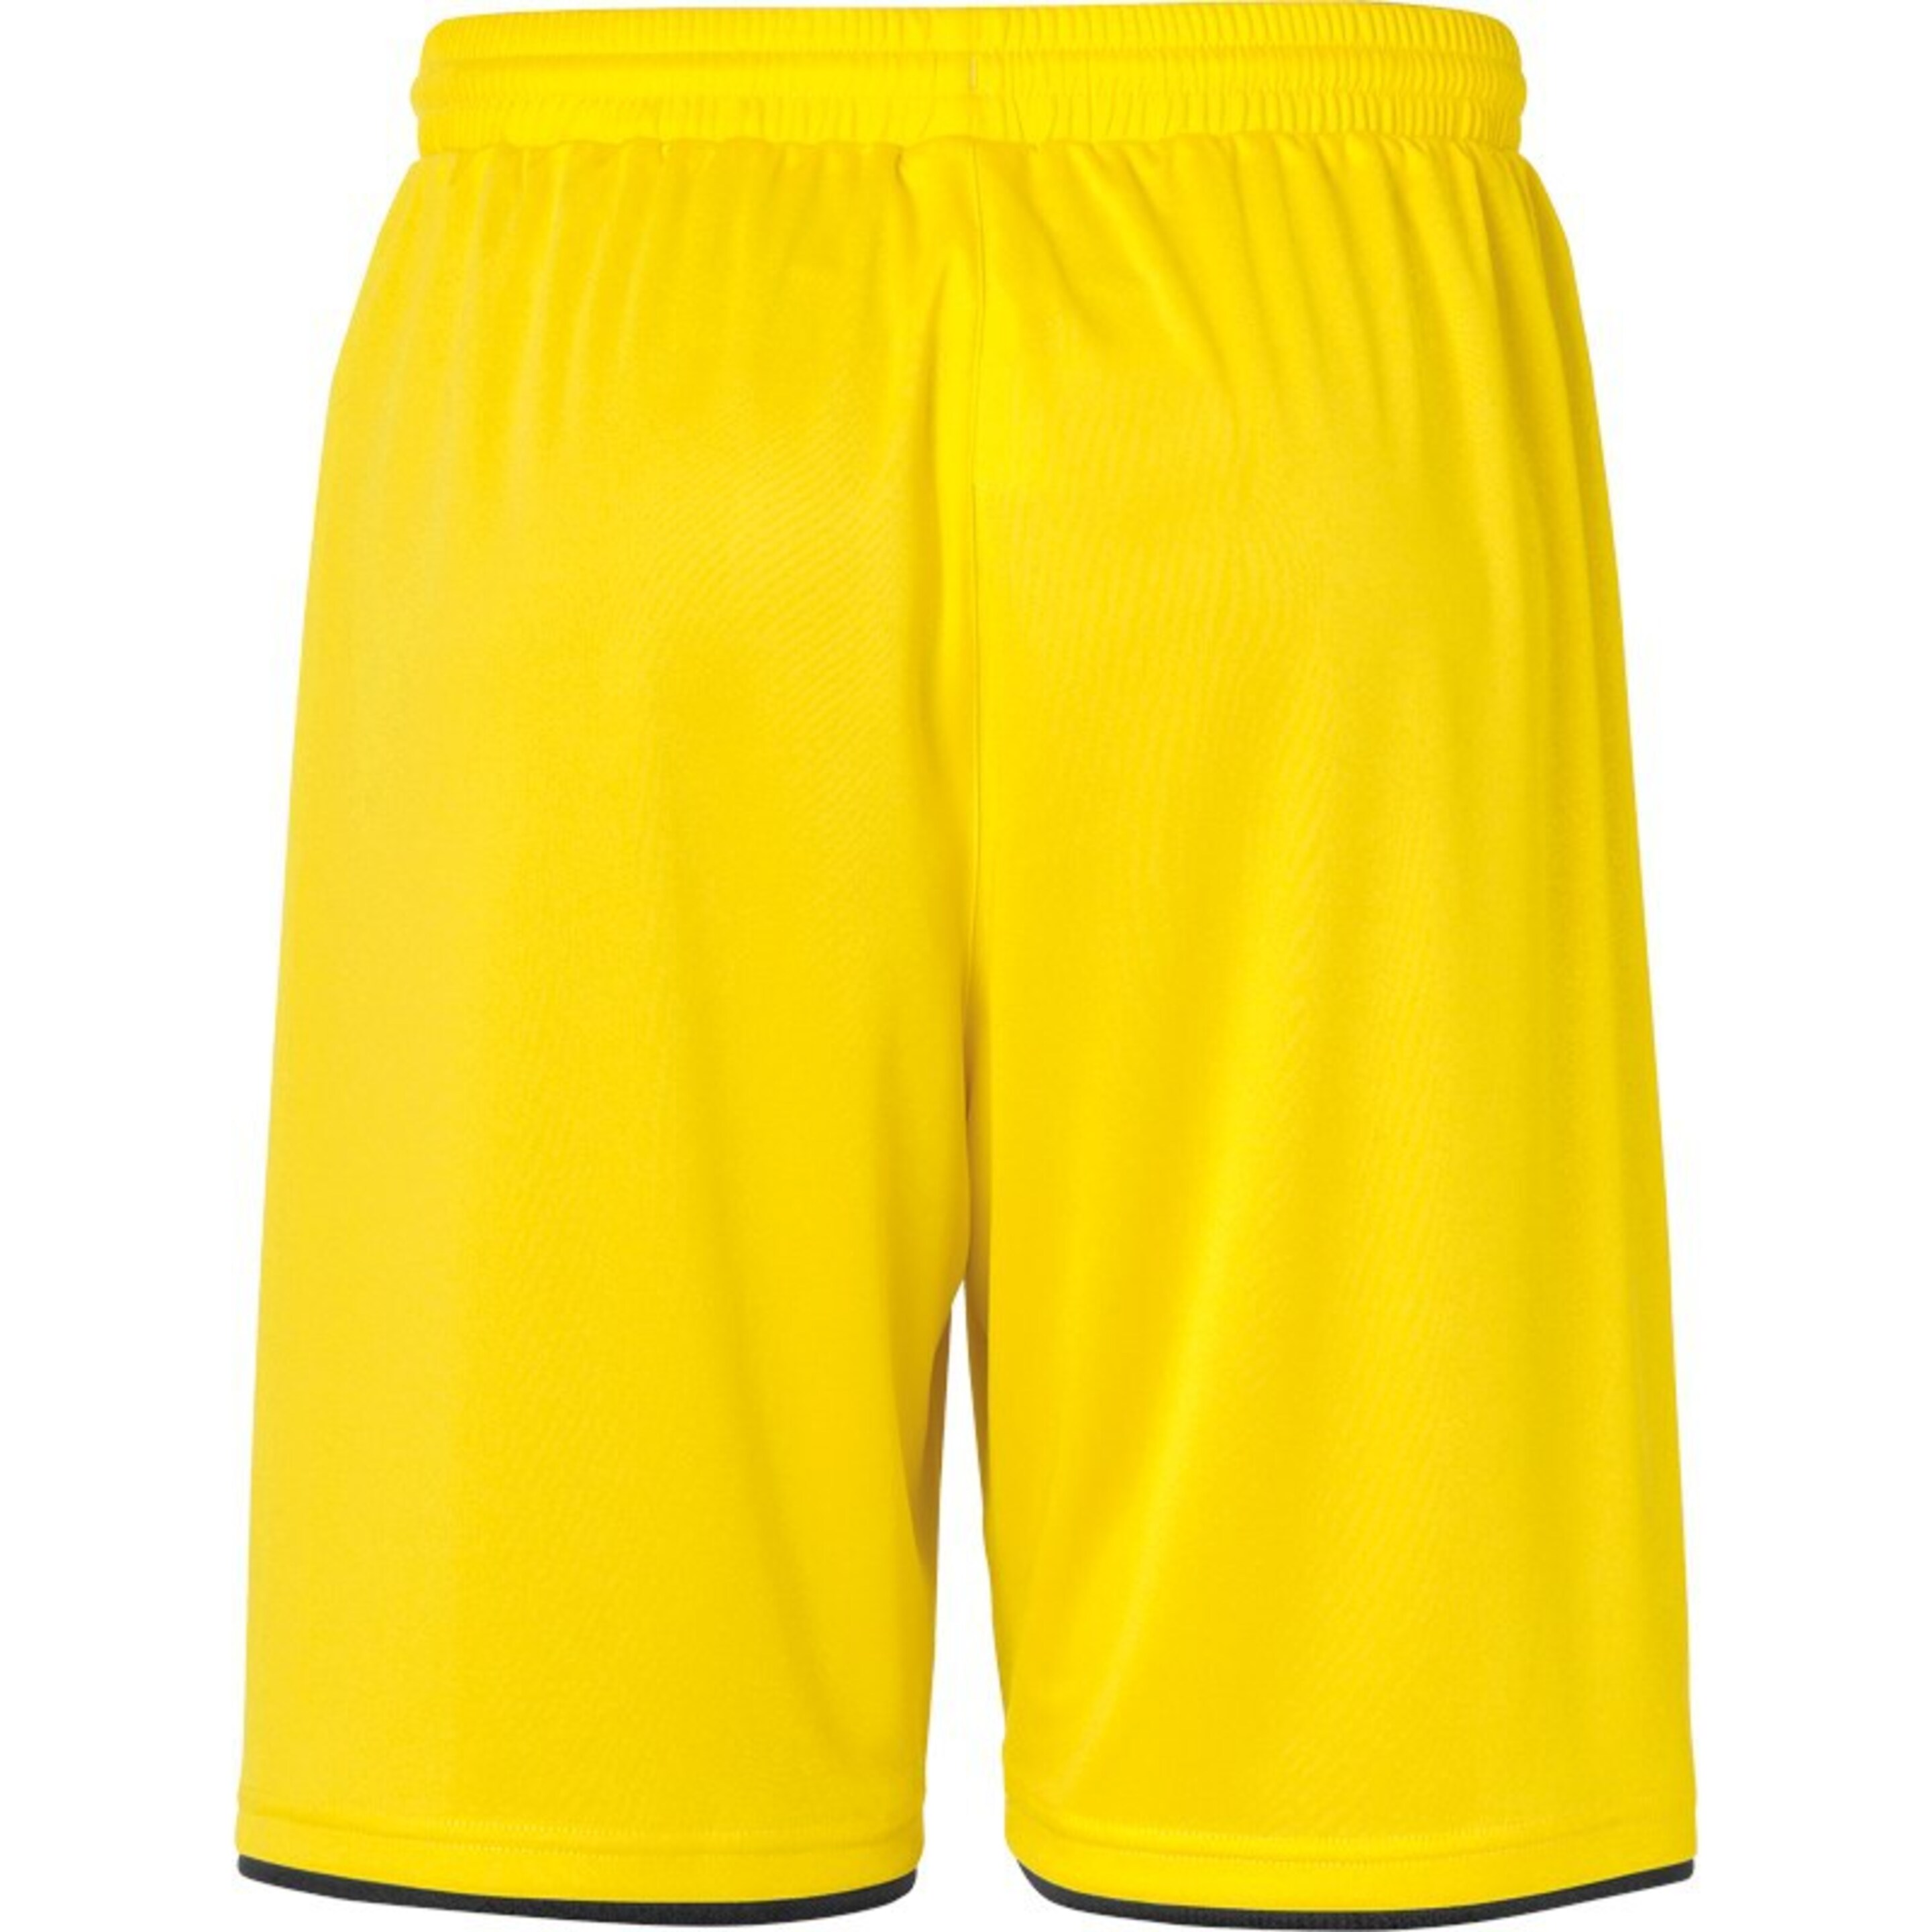 Club Shorts Lima Amarillo/negro Uhlsport - negro_amarillo  MKP